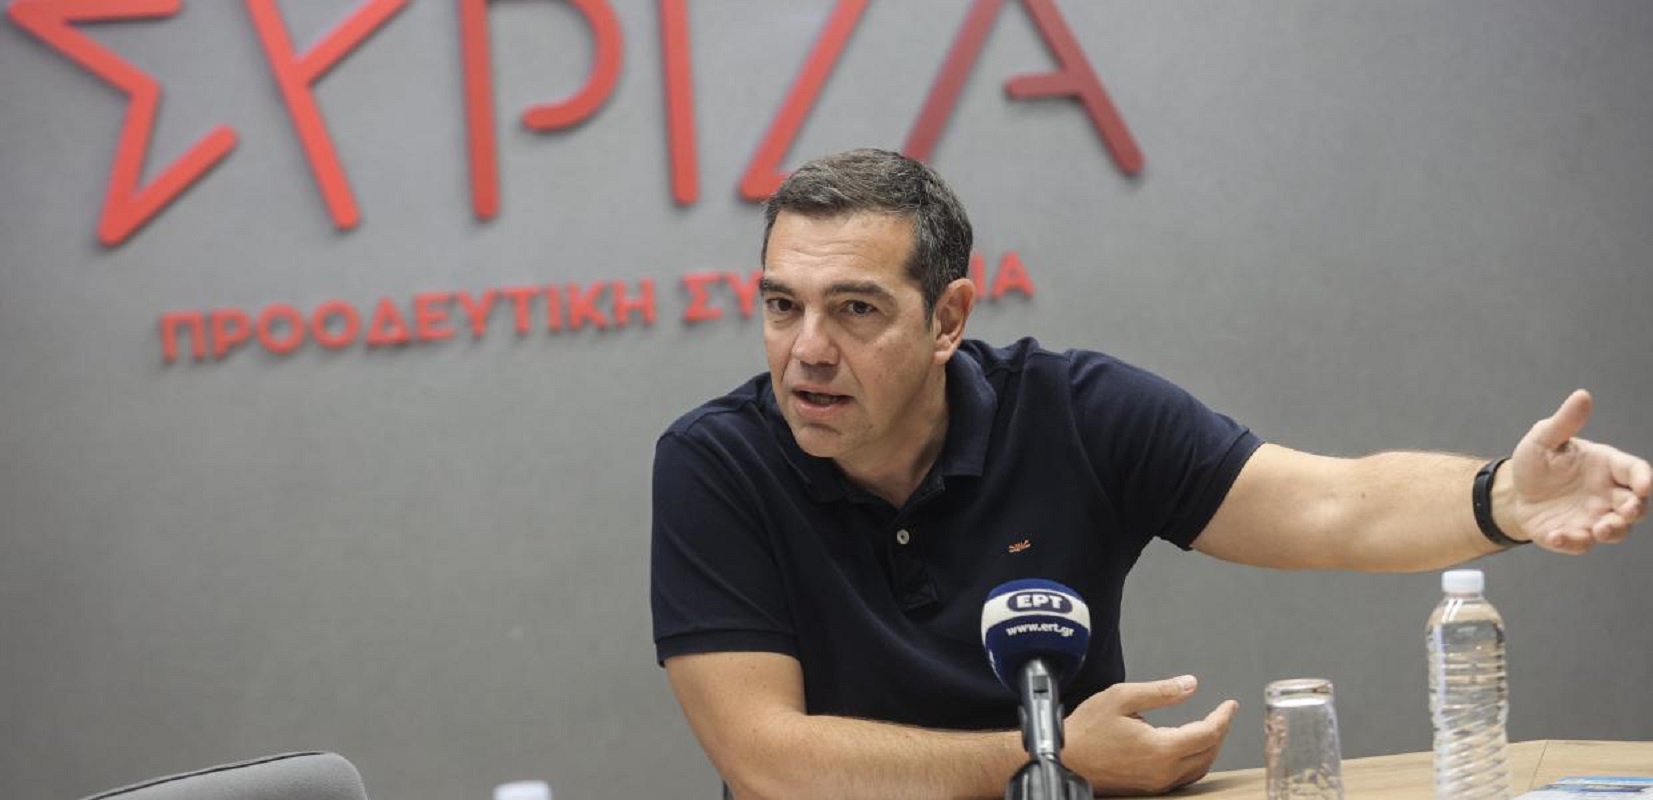 Ο ΣΥΡΙΖΑ Προσφεύγει στη Δίωξη Ηλεκτρονικού Εγκλήματος για πλαστογραφία σε βάρος του κόμματος και του Αλέξη Τσίπρα στο twitter